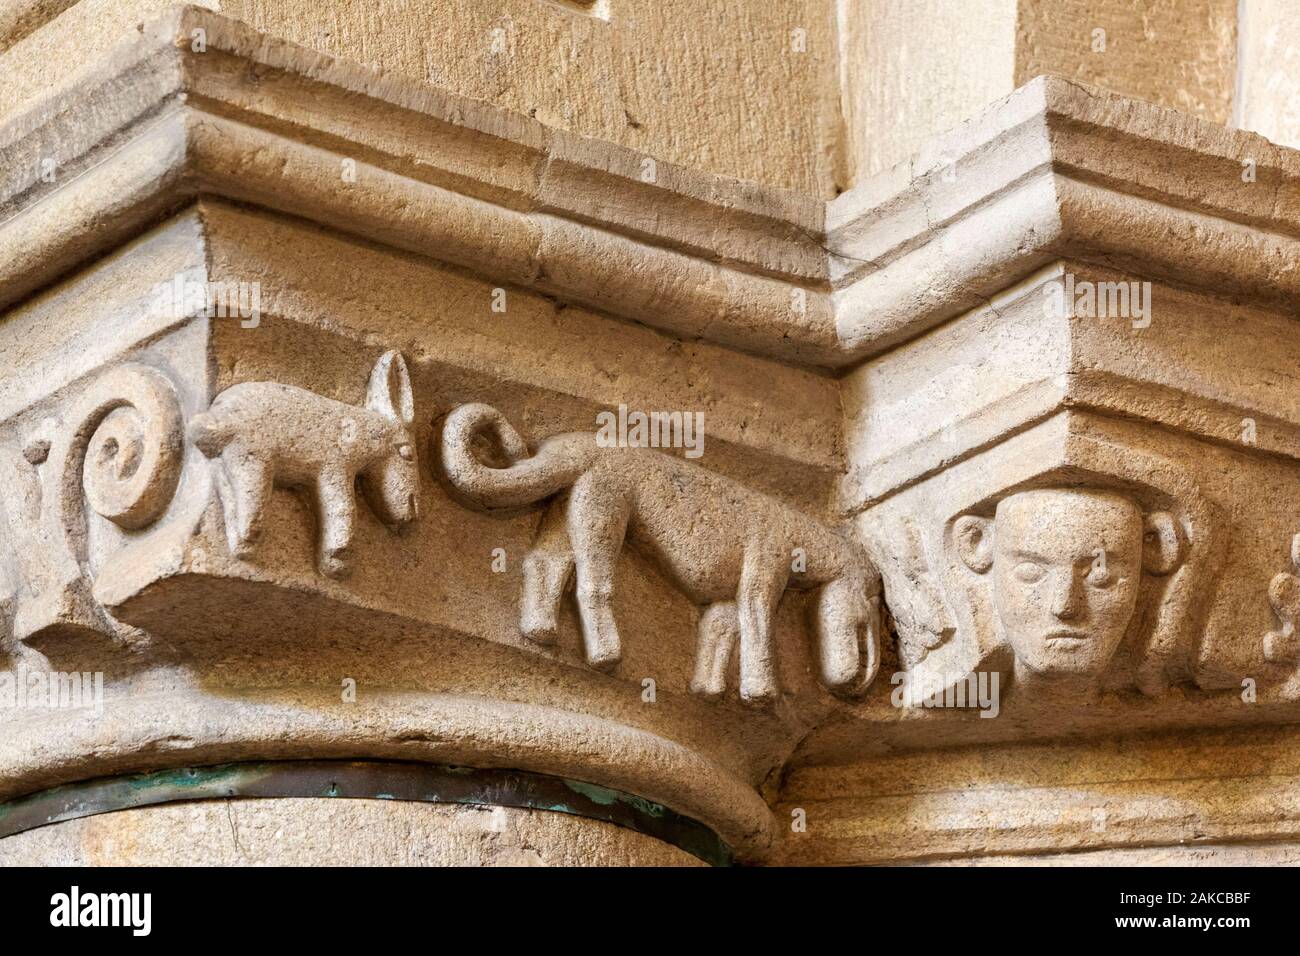 Frankreich, Morbihan, Josselin, mittelalterliches Dorf, Basilika Notre Dame du Roncier, Überbleibsel einer romanischen Kapital aus dem zwölften Jahrhundert, ein Hund vor einem anderen Tier, das aussieht wie ein Ram, seltene Tier Darstellung in einer Kirche Stockfoto